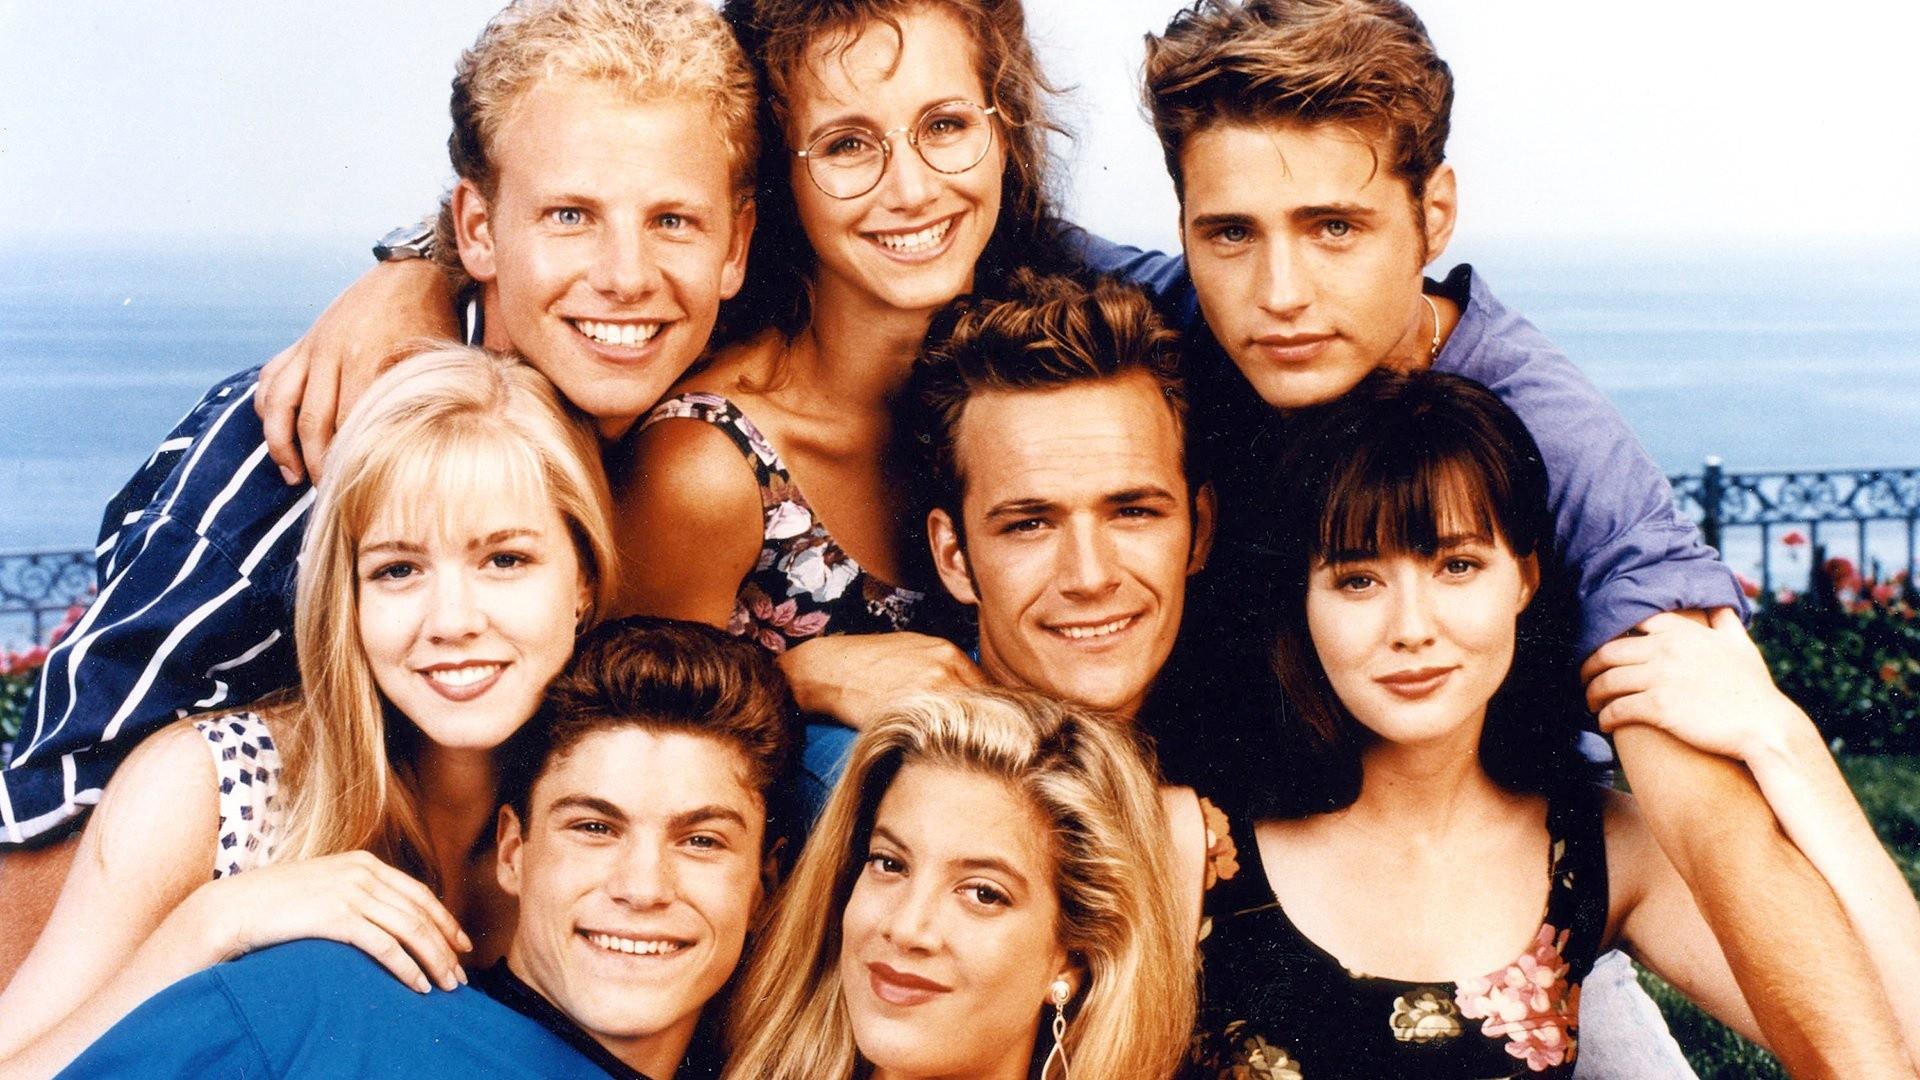 Беверли-Хиллз 90210 – 1 сезон 16 серия «Известность в том, где вы её нашли» / Beverly Hills, 90210